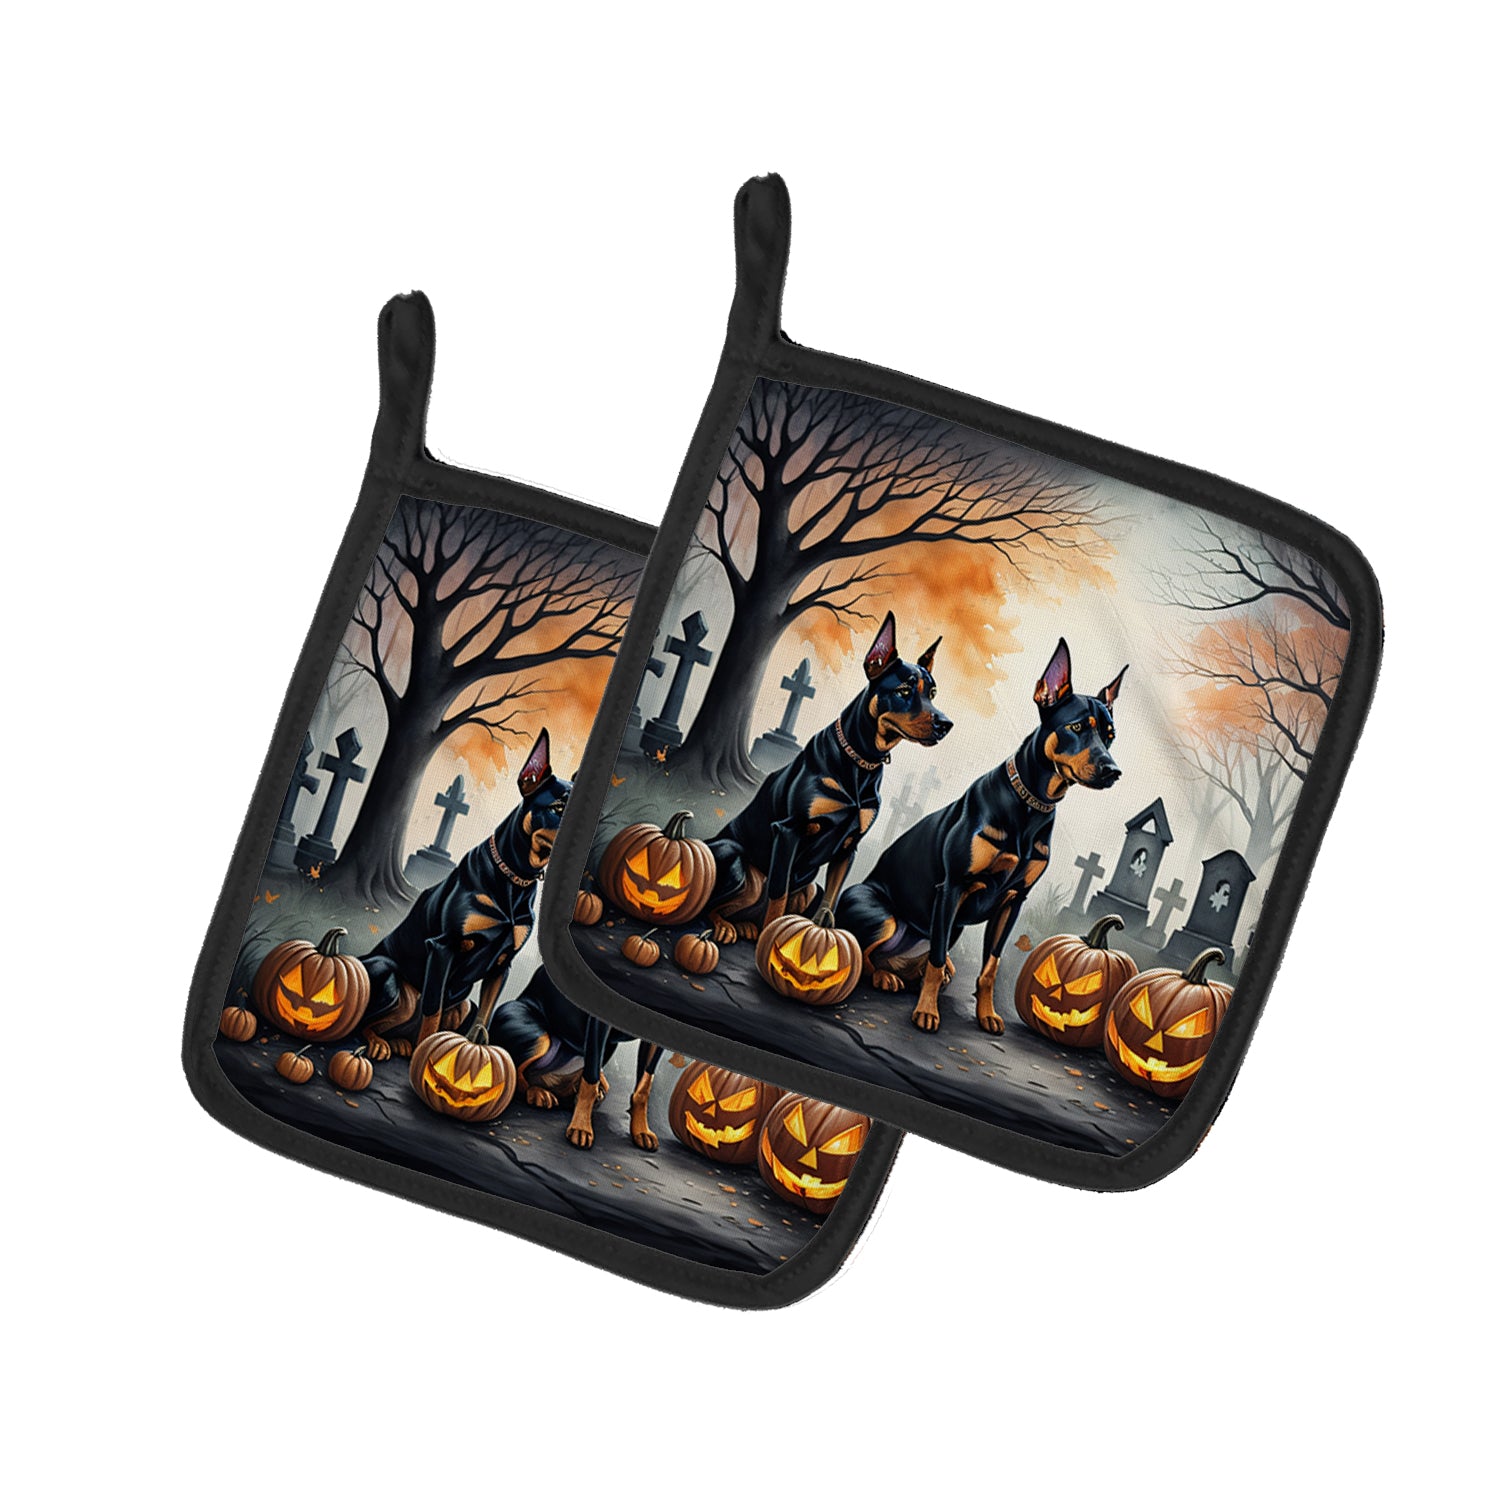 Buy this Doberman Pinscher Spooky Halloween Pair of Pot Holders